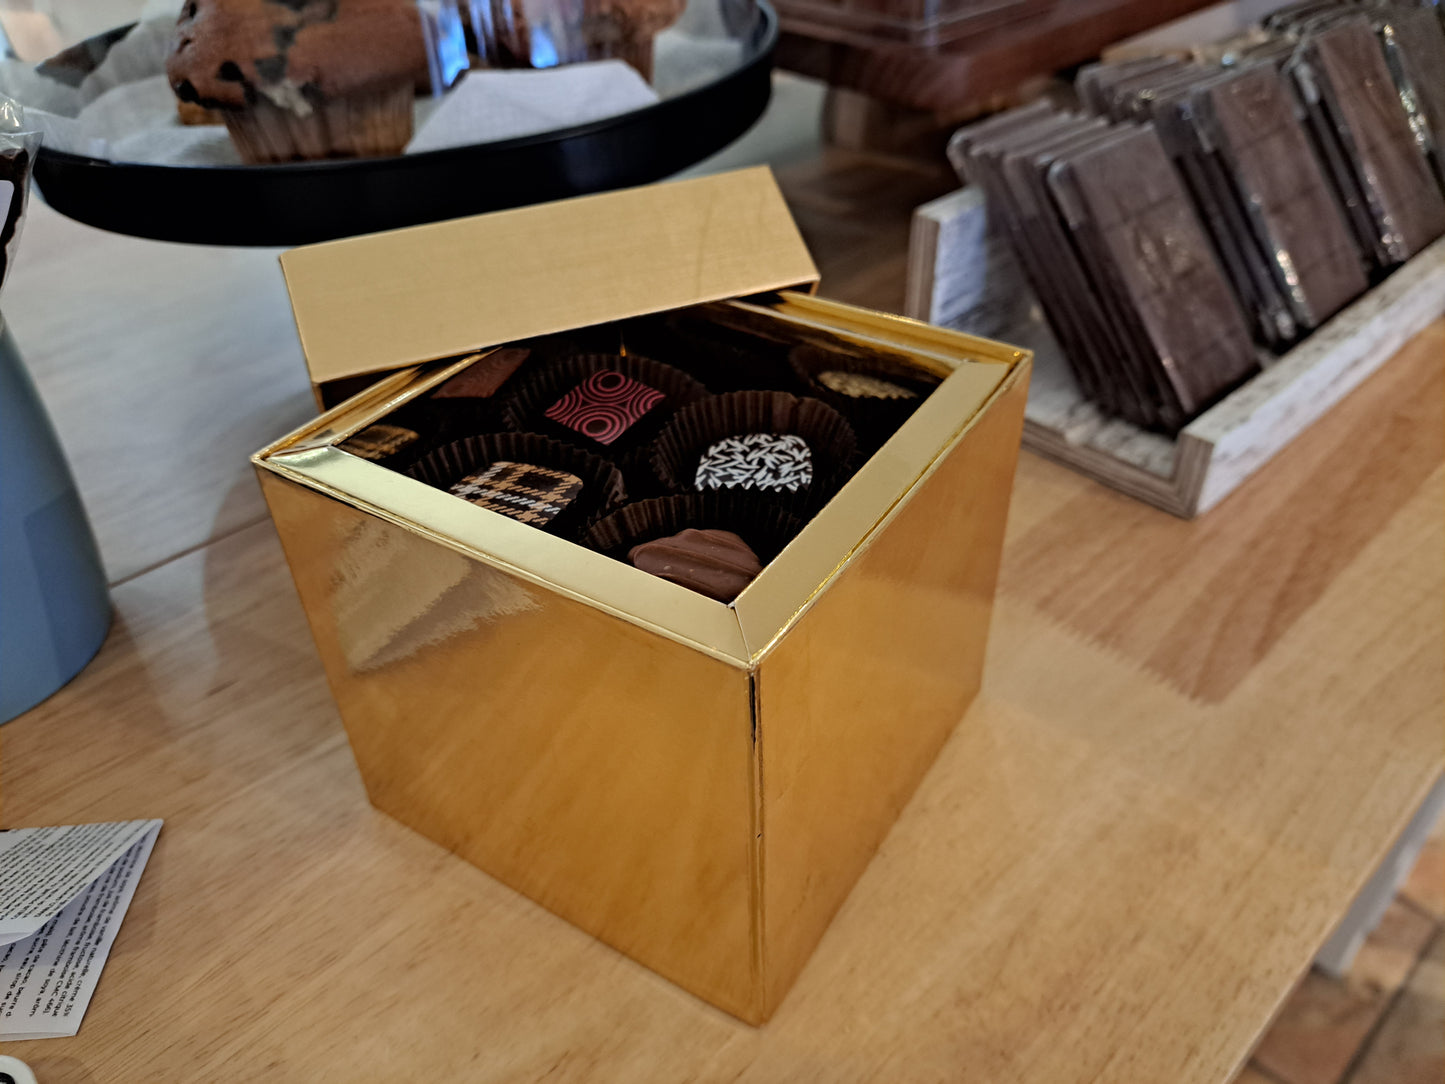 La classique boîte de chocolats!